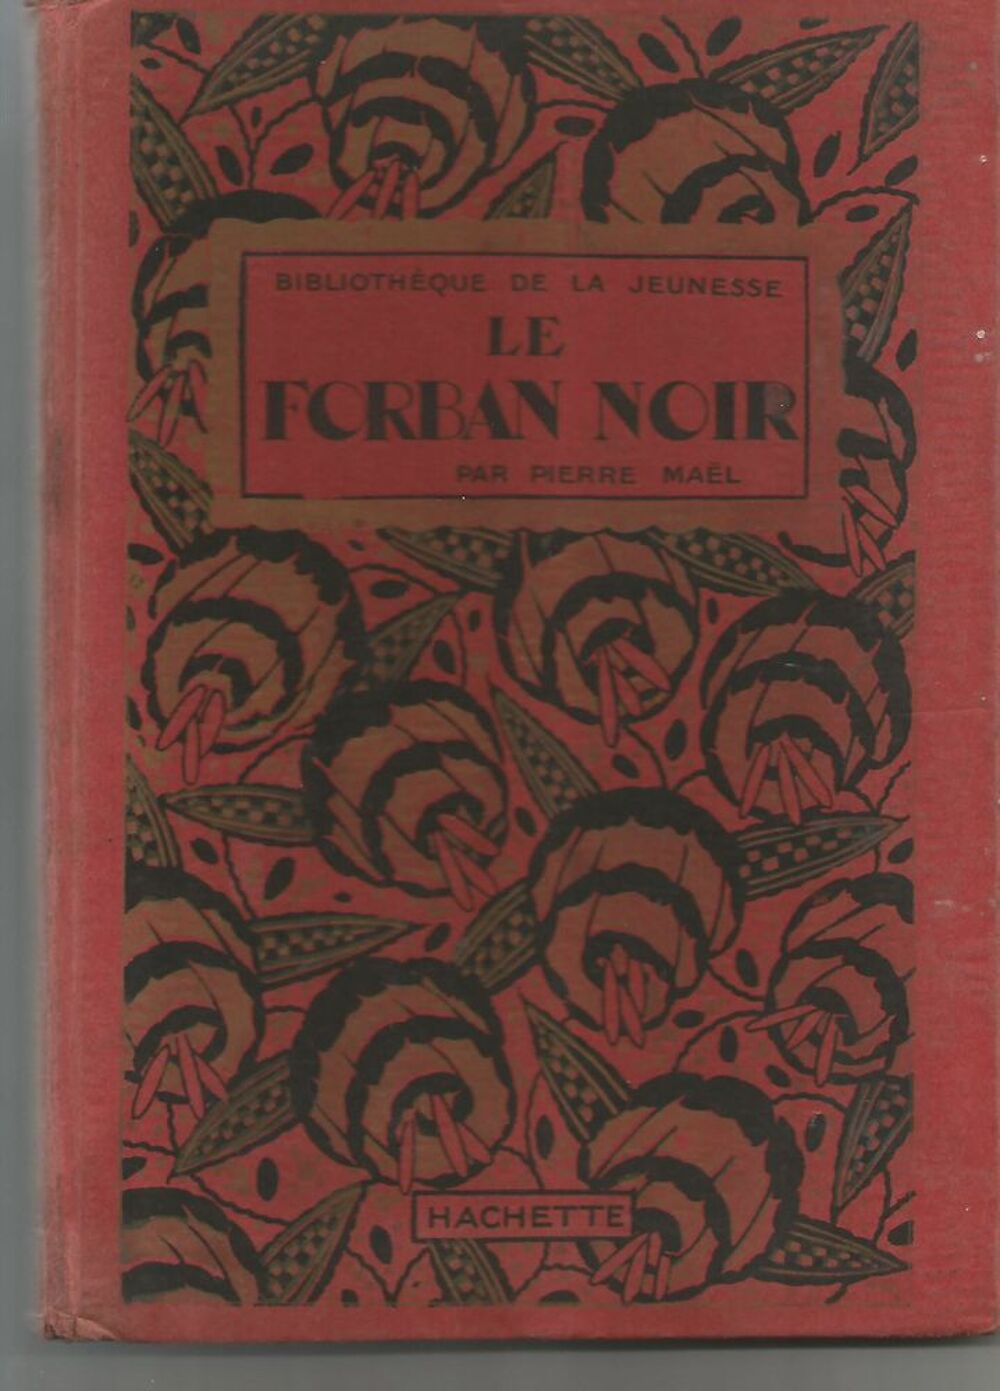 Pierre MAEL le forban noir Biblioth&egrave;que de la Jeunesse 1921 Livres et BD